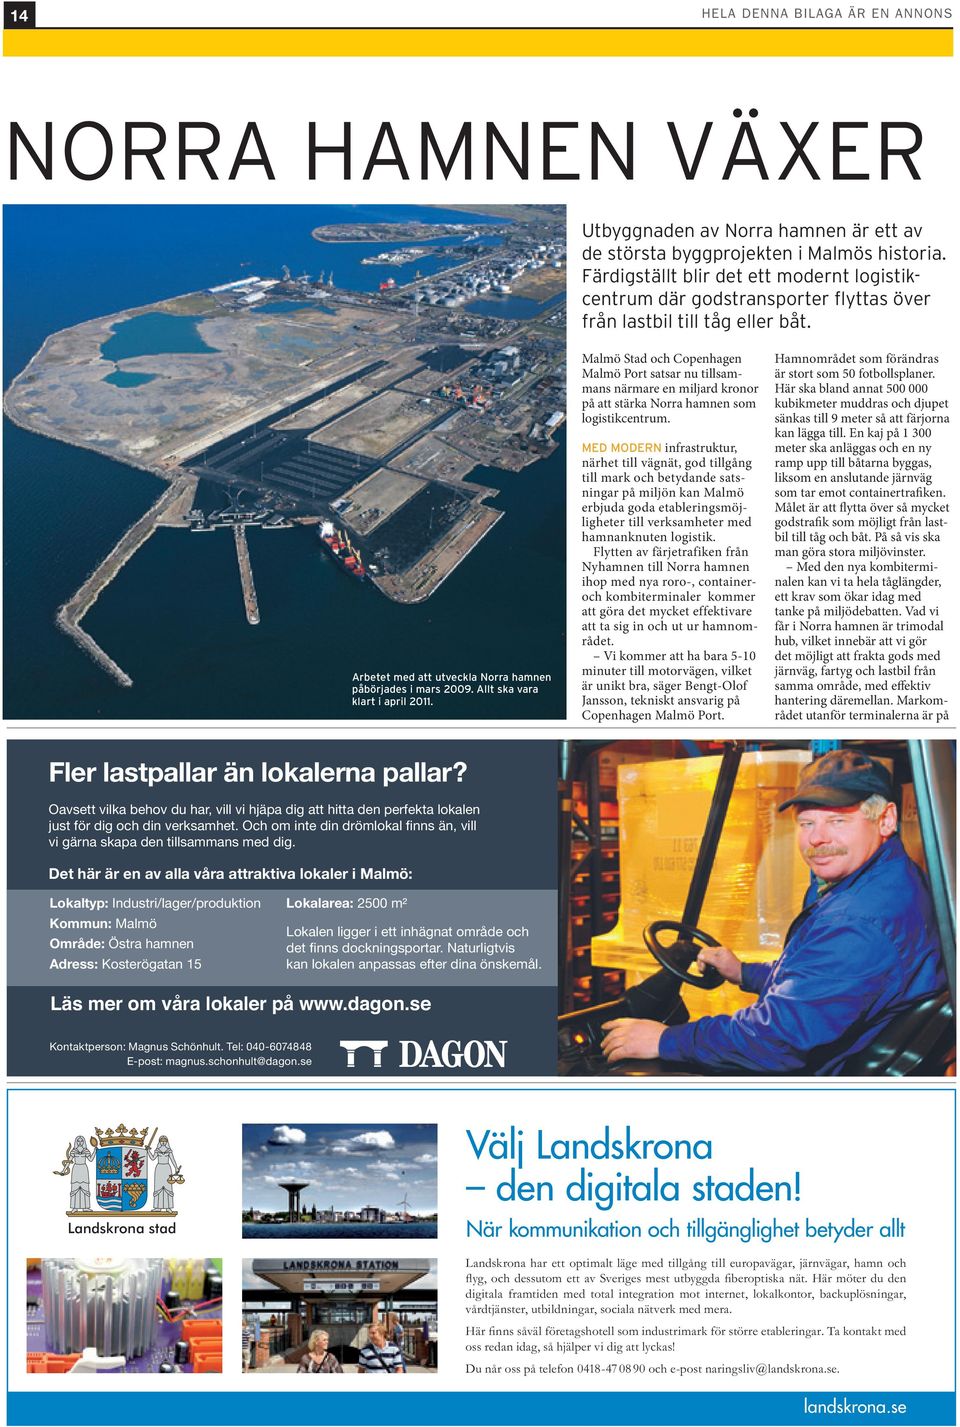 Allt ska vara klart i april 2011. Malmö Stad och Copenhagen Malmö Port satsar nu tillsammans närmare en miljard kronor på att stärka Norra hamnen som logistikcentrum.